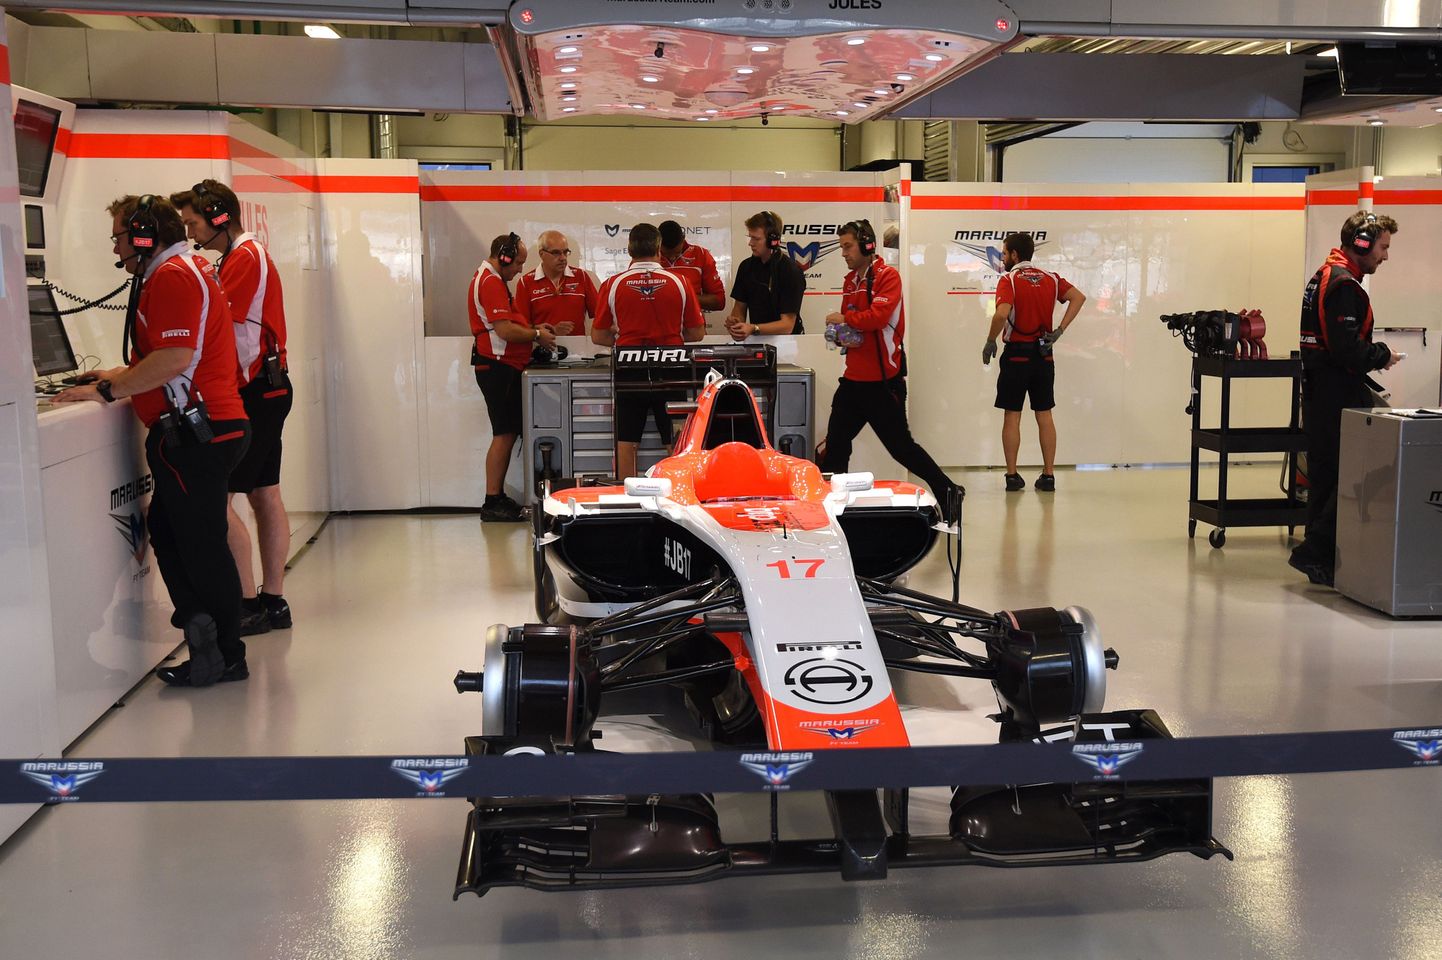 Marussia tehnikud seisavad Jules Bianchi vormeli taga. Kuigi masin on ette valmistatud, siis sellel nädalavahetusel seda garaažist välja ei aeta